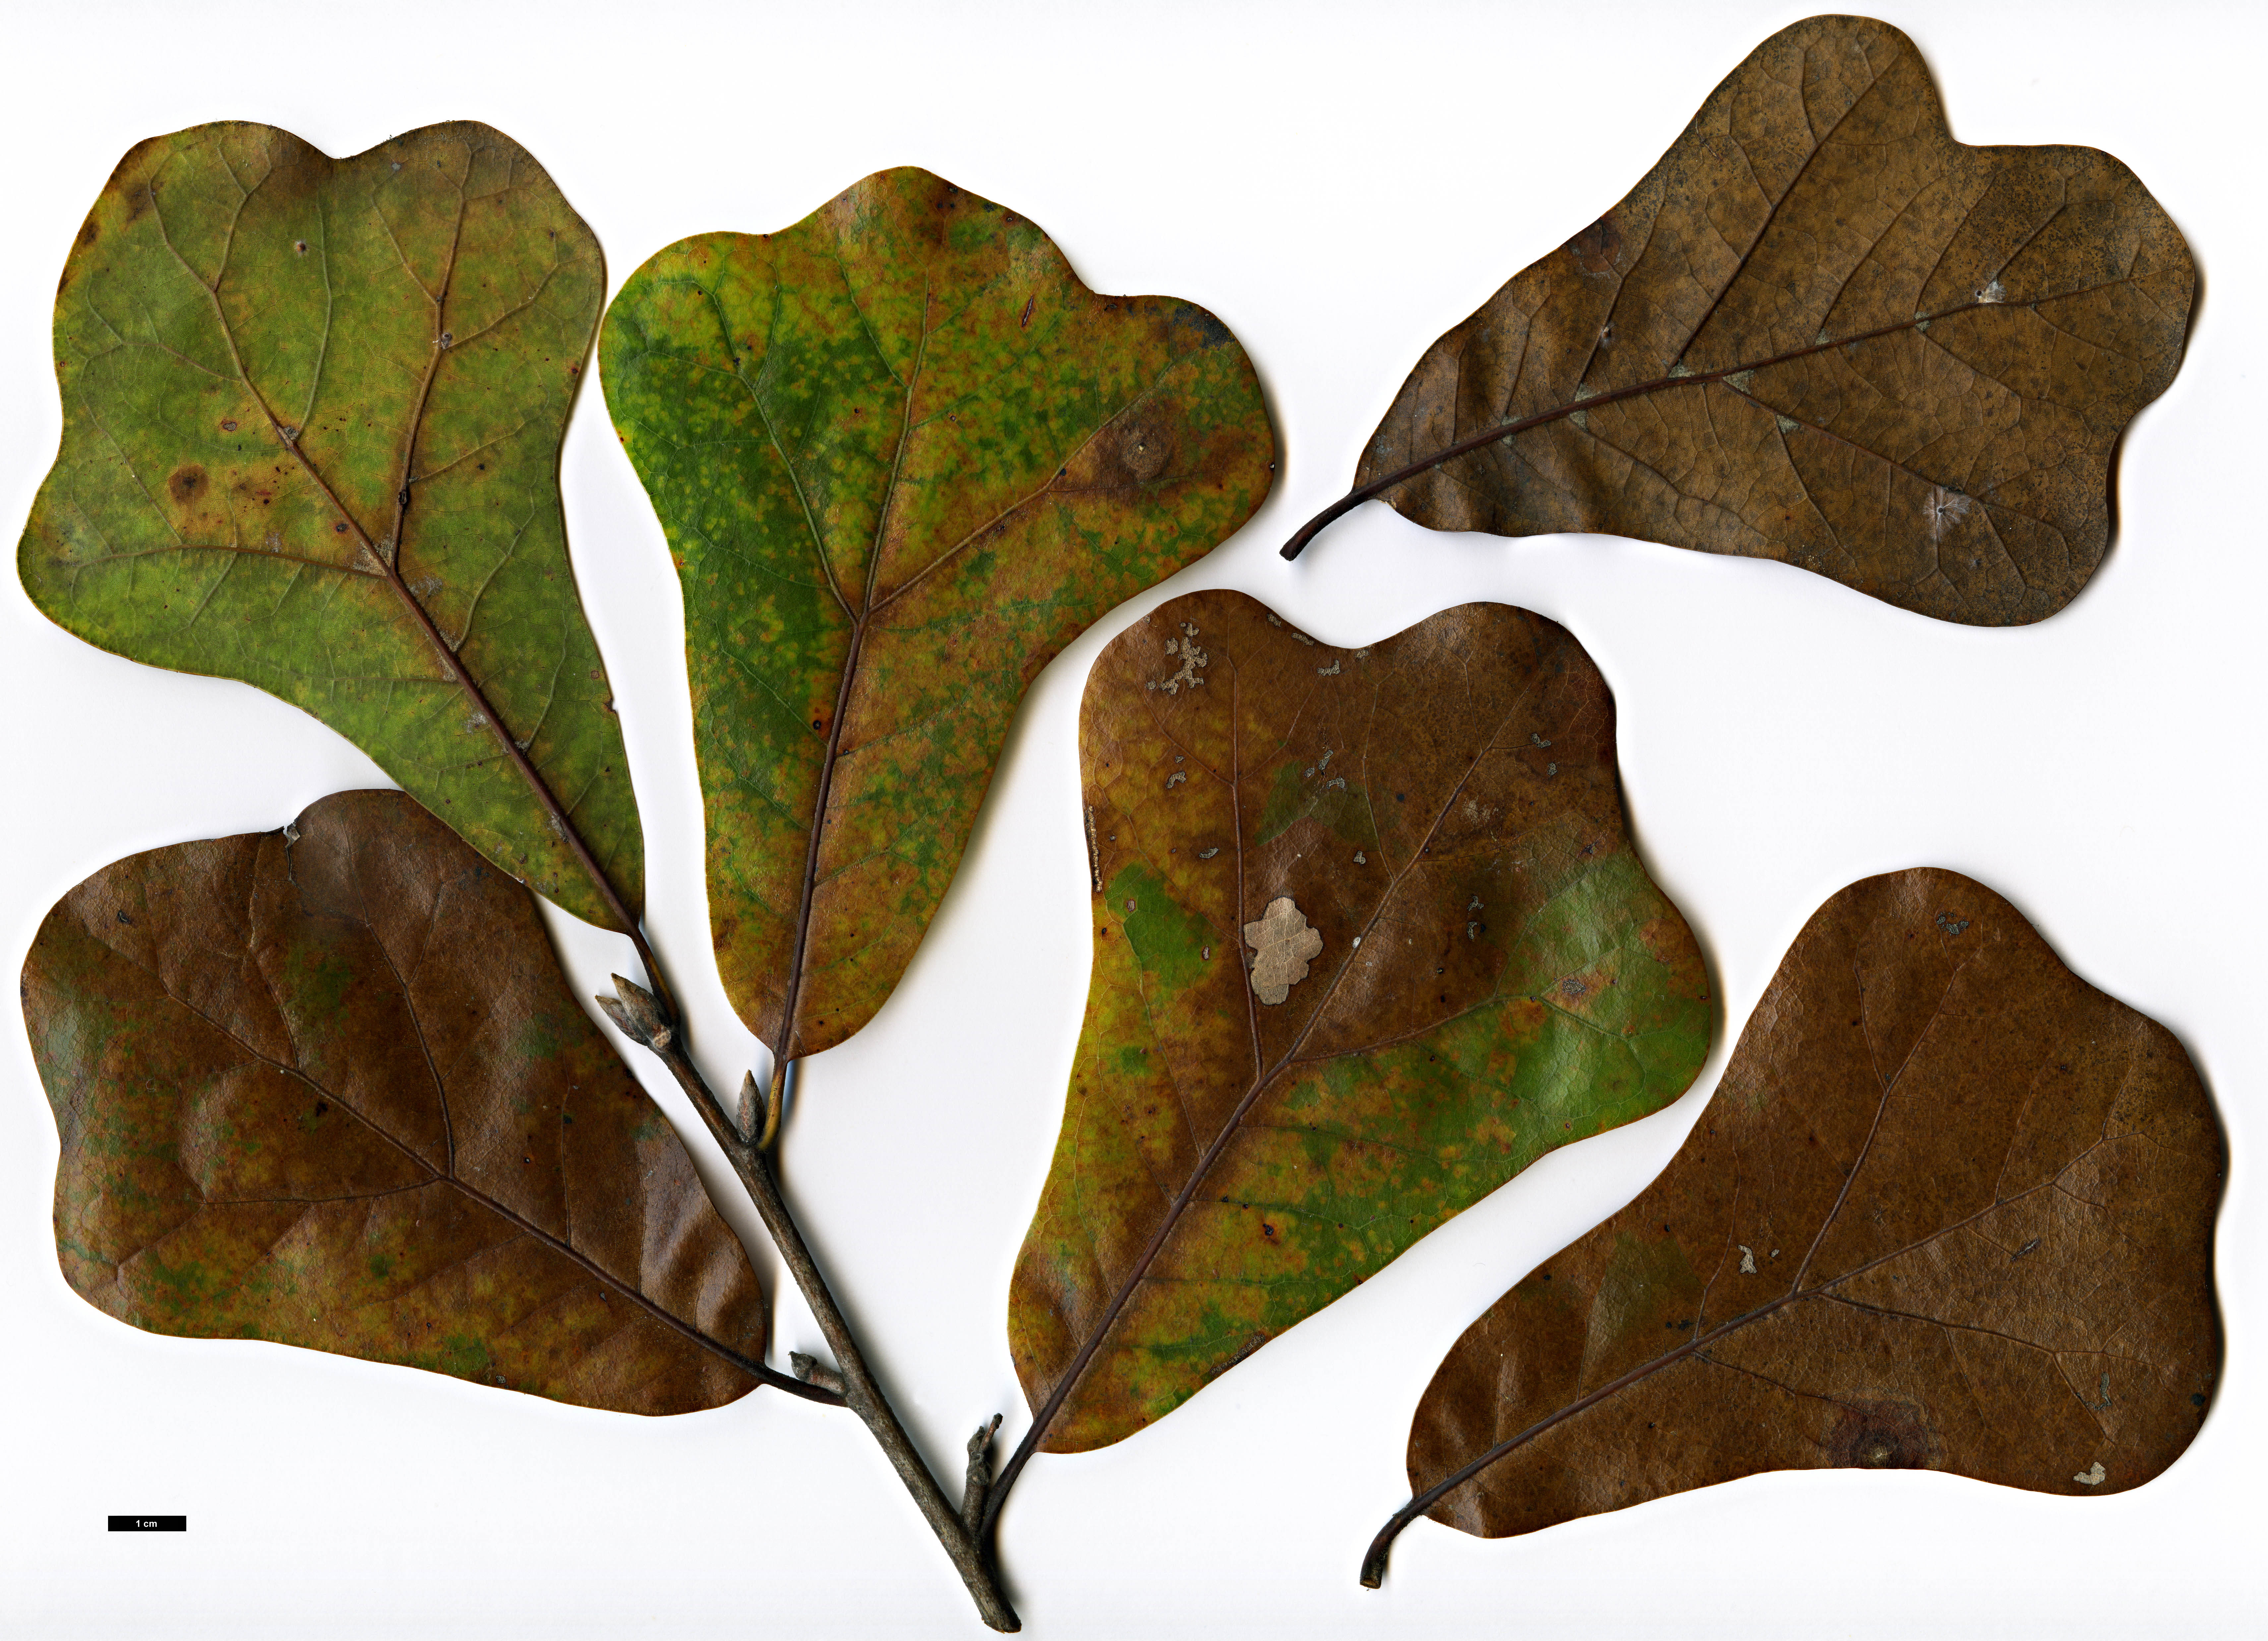 High resolution image: Family: Fagaceae - Genus: Quercus - Taxon: ×sterilis (Q.marilandica × Q.nigra)